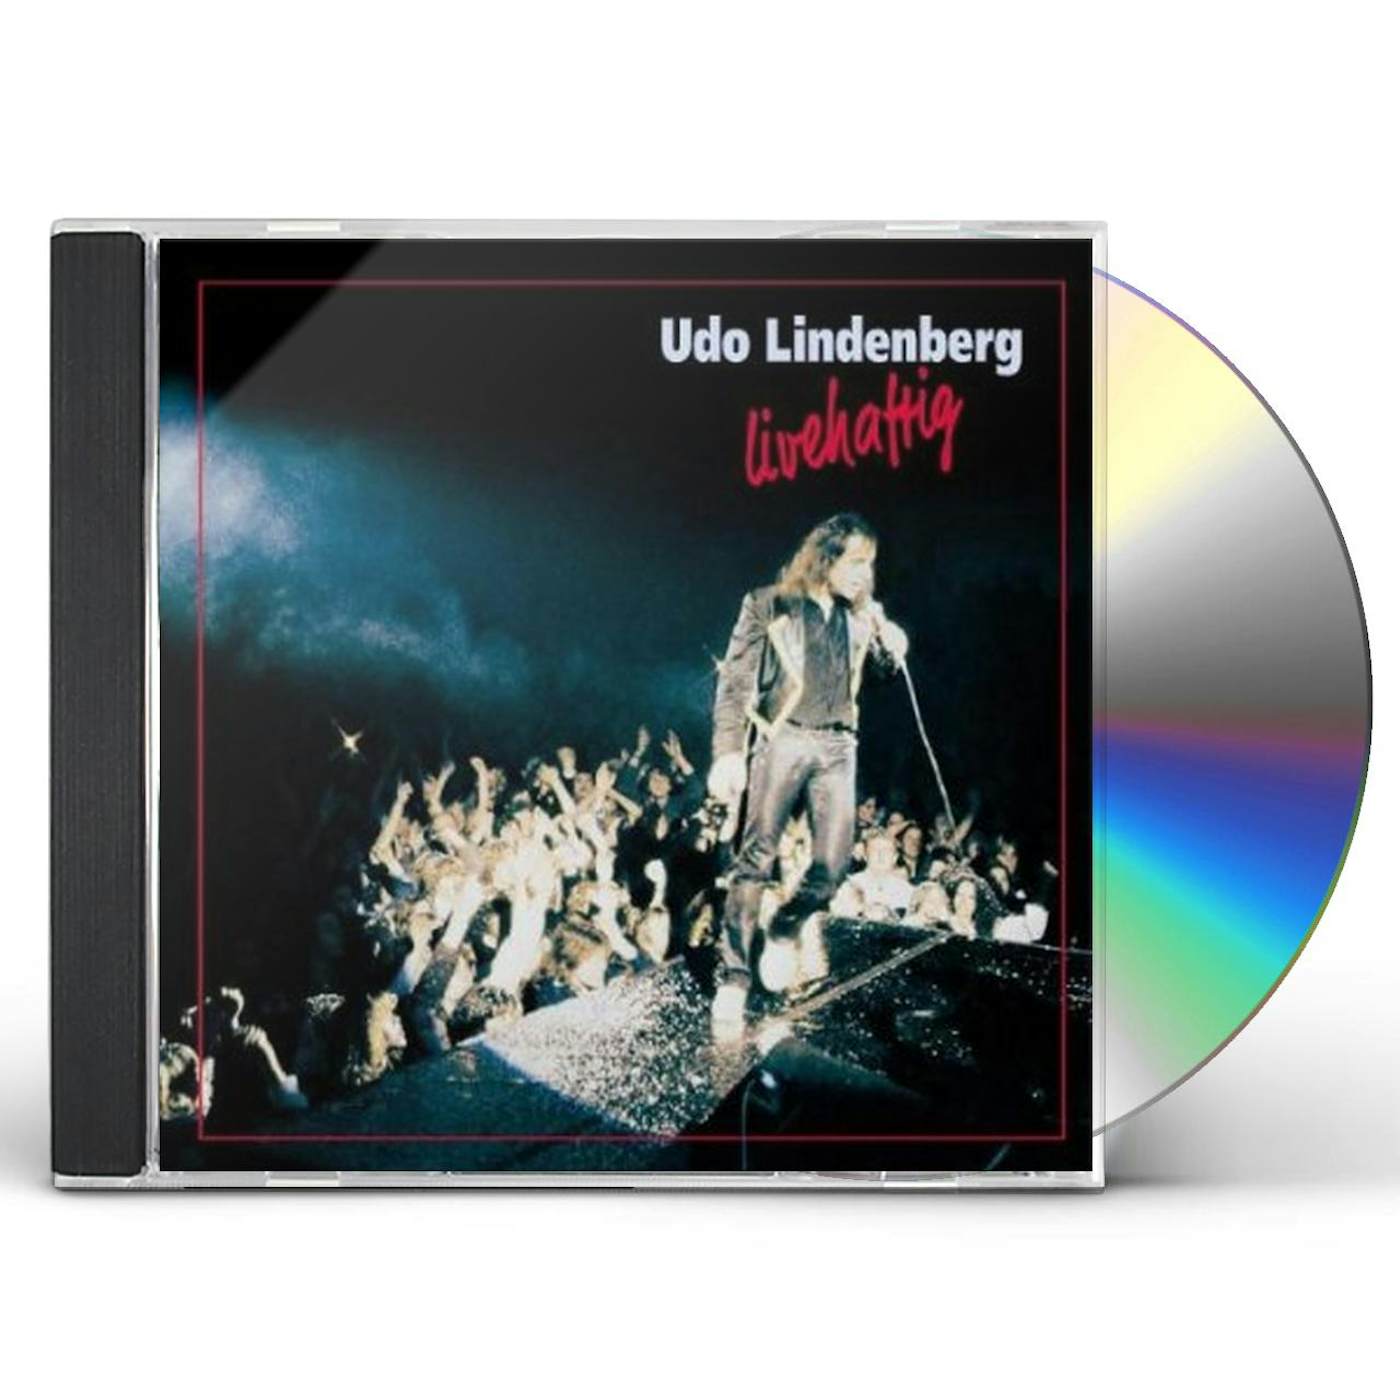 Udo Lindenberg LIVEHAFTIG CD